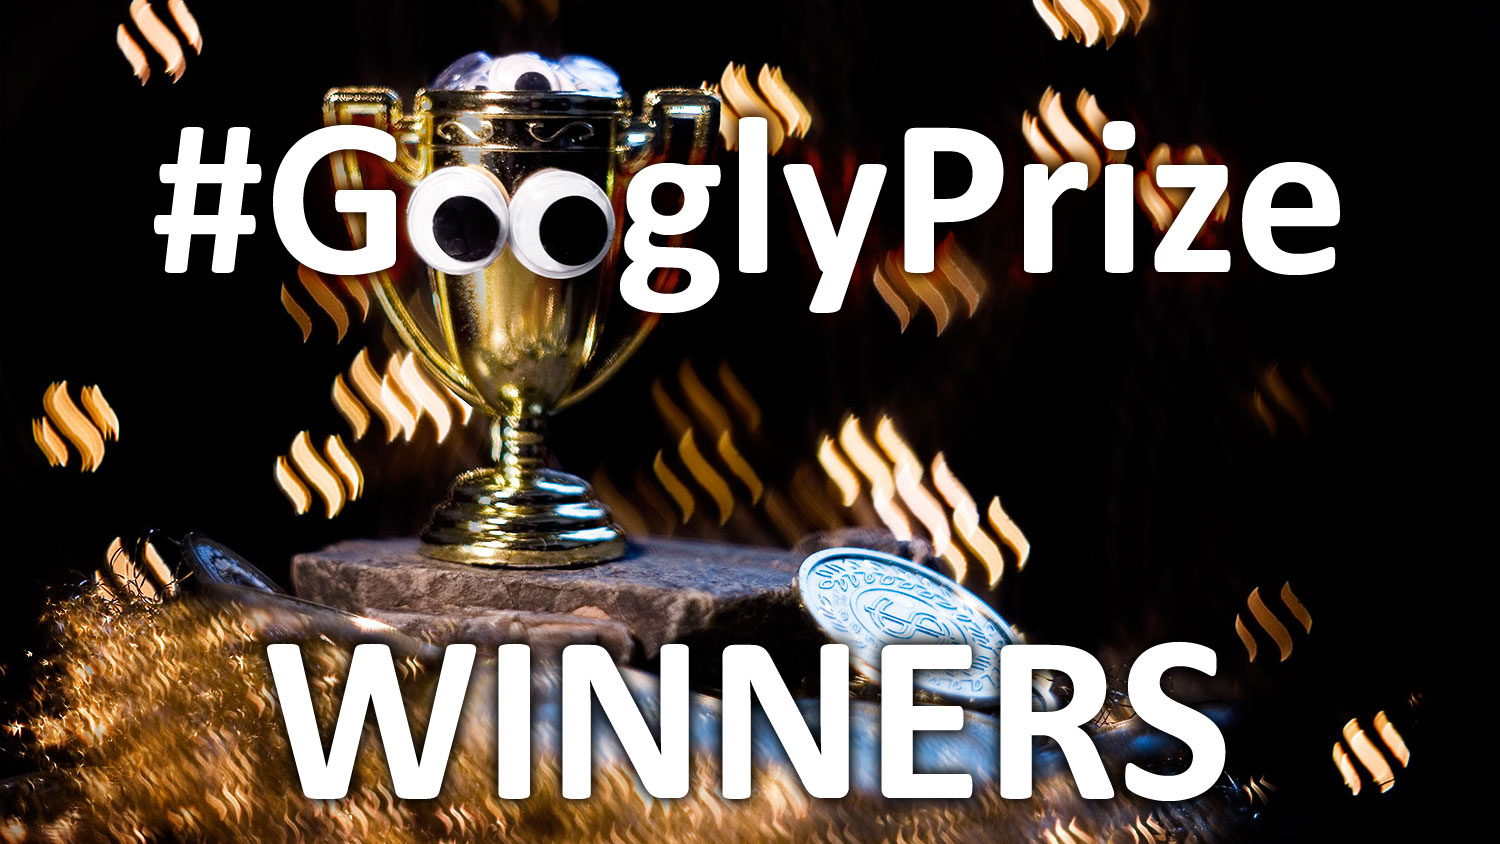 GooglyPrize 004 Winners